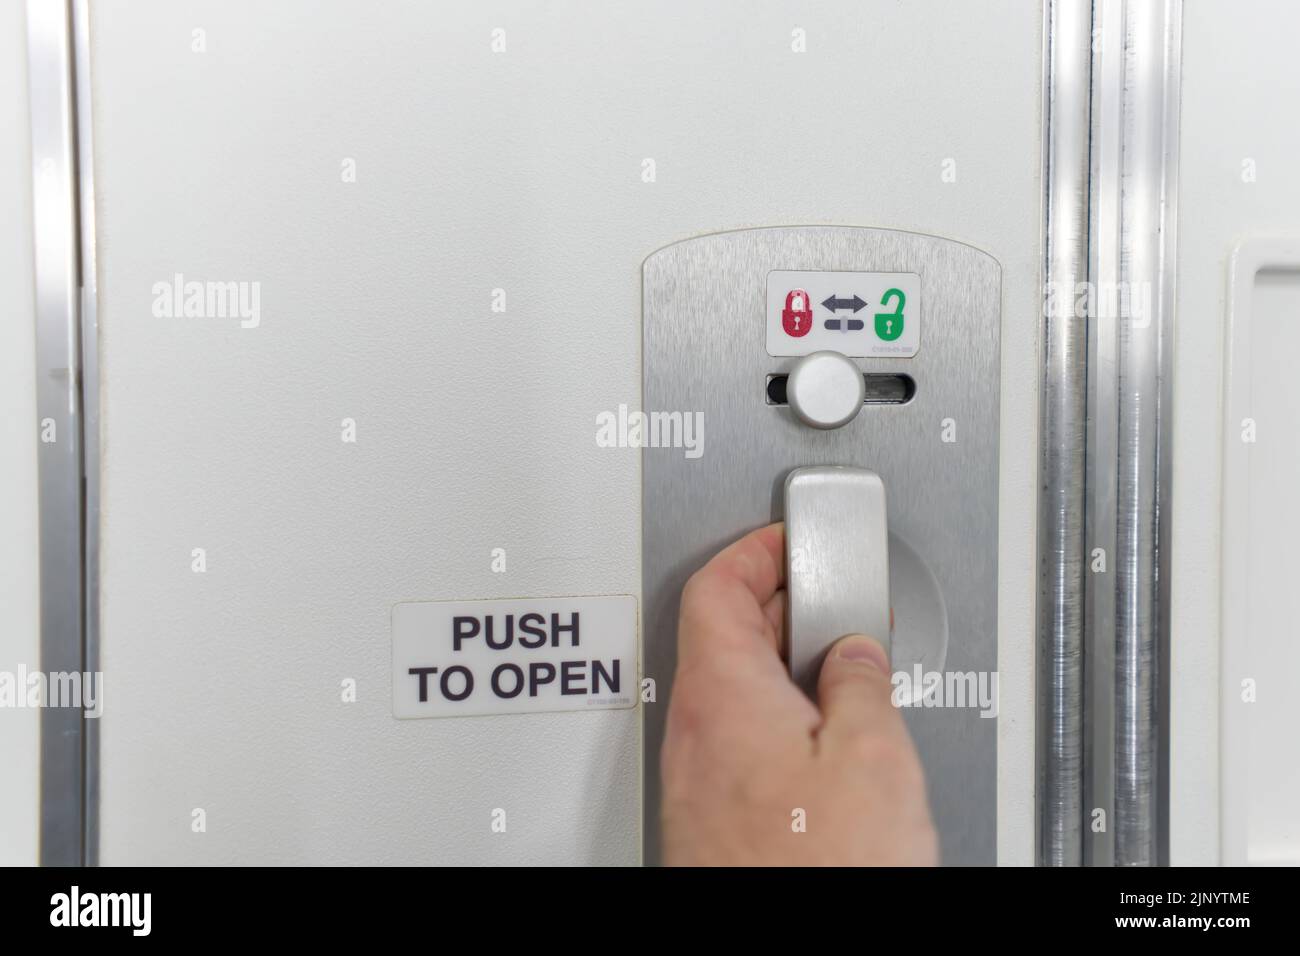 sourcingmap® 5Pcs toilettes publiques verrouillage porte tournante en plastique vert serrure bouton indicateur rouge 